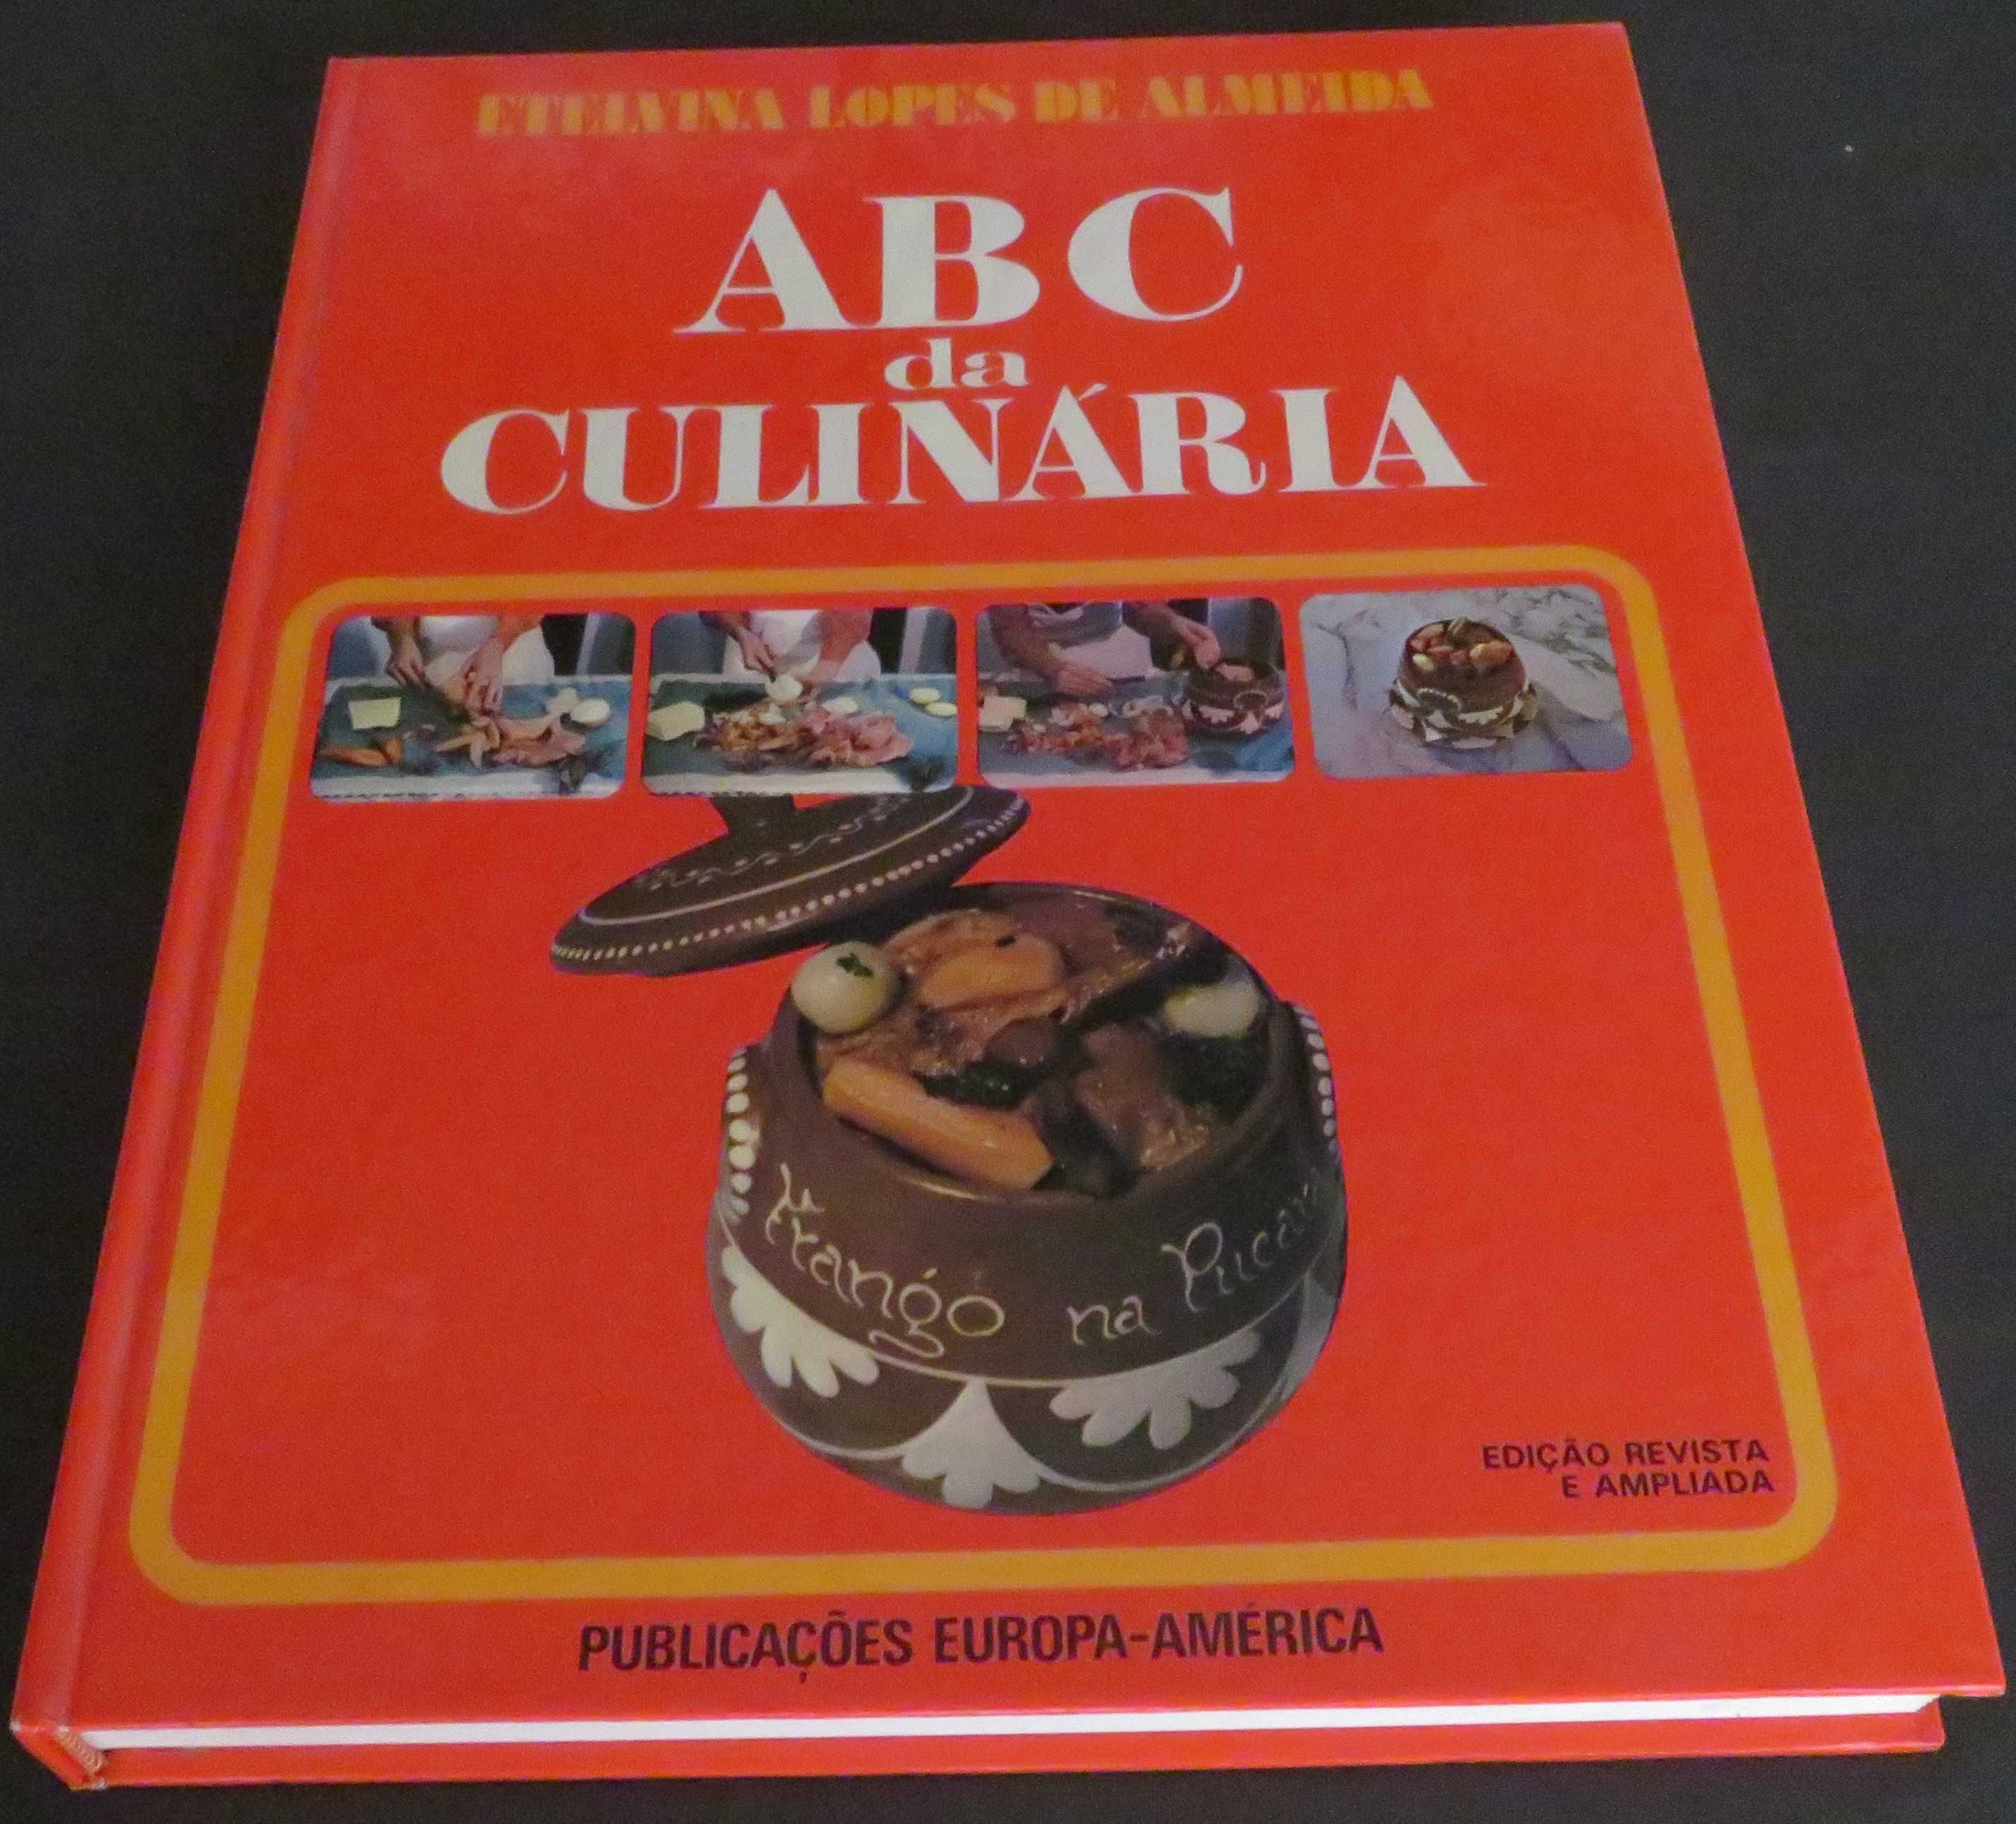 ABC da Culinária de Etelvina Lopes de Almeida